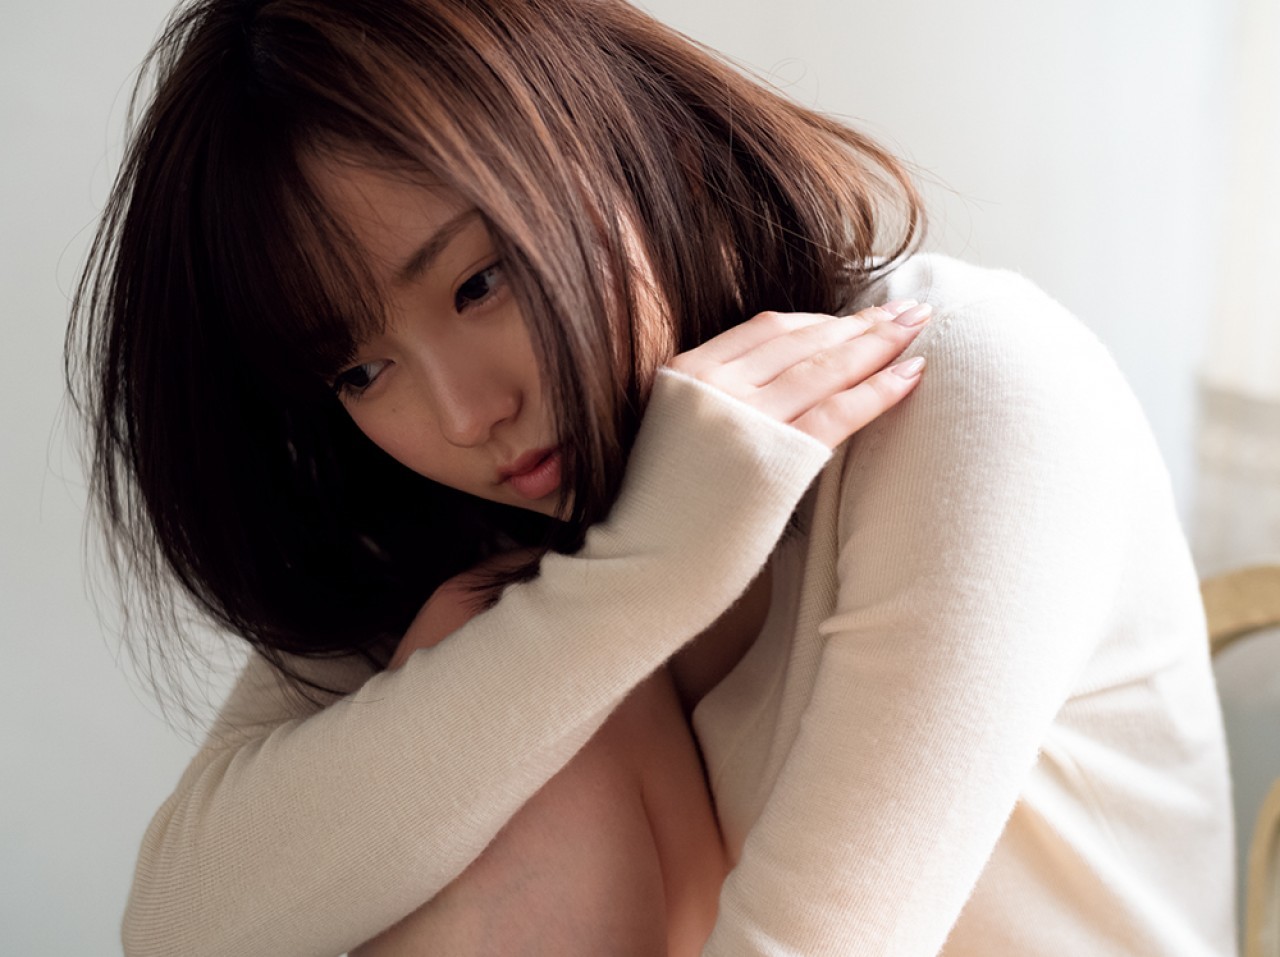 い ま い ず み ゆ い, 今 泉 佑 唯, Imaizumi Yui - FRIDAY Digital, 2019.03.29 "史 上...